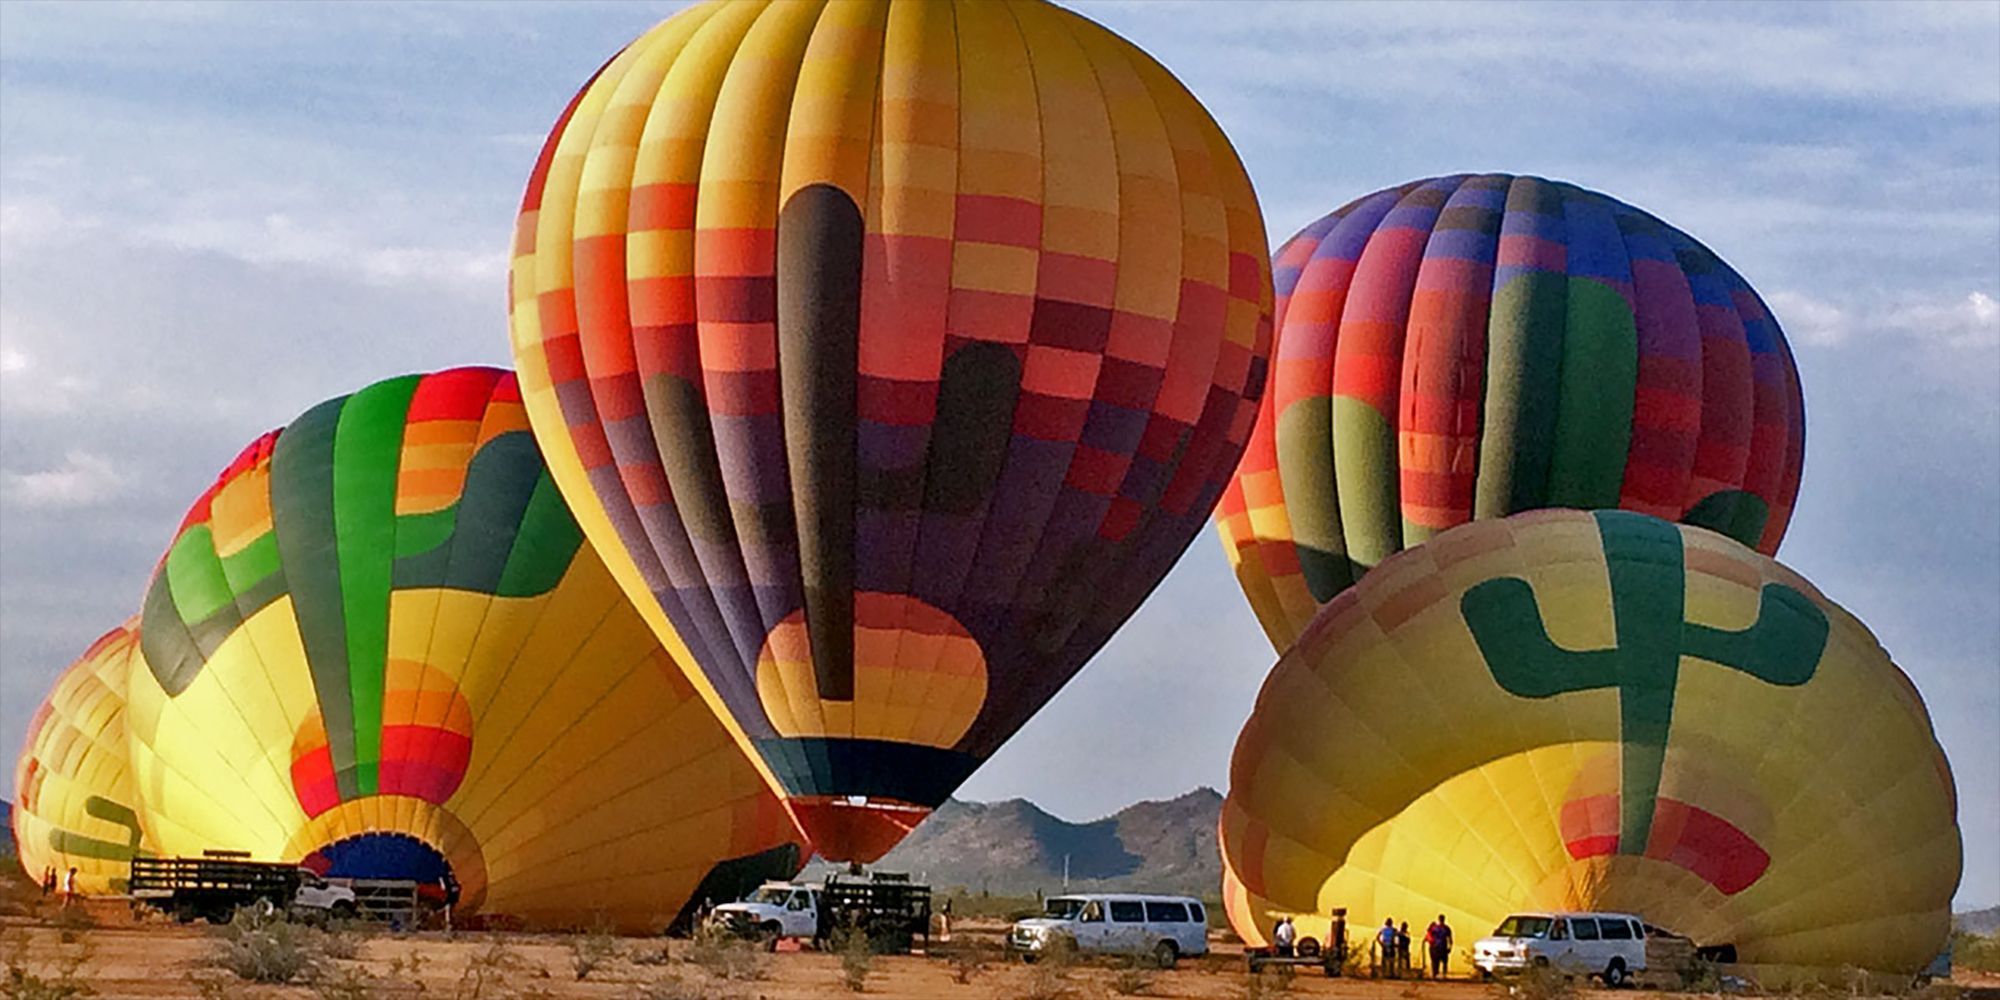 heteluchtballon over de Sonora Desert